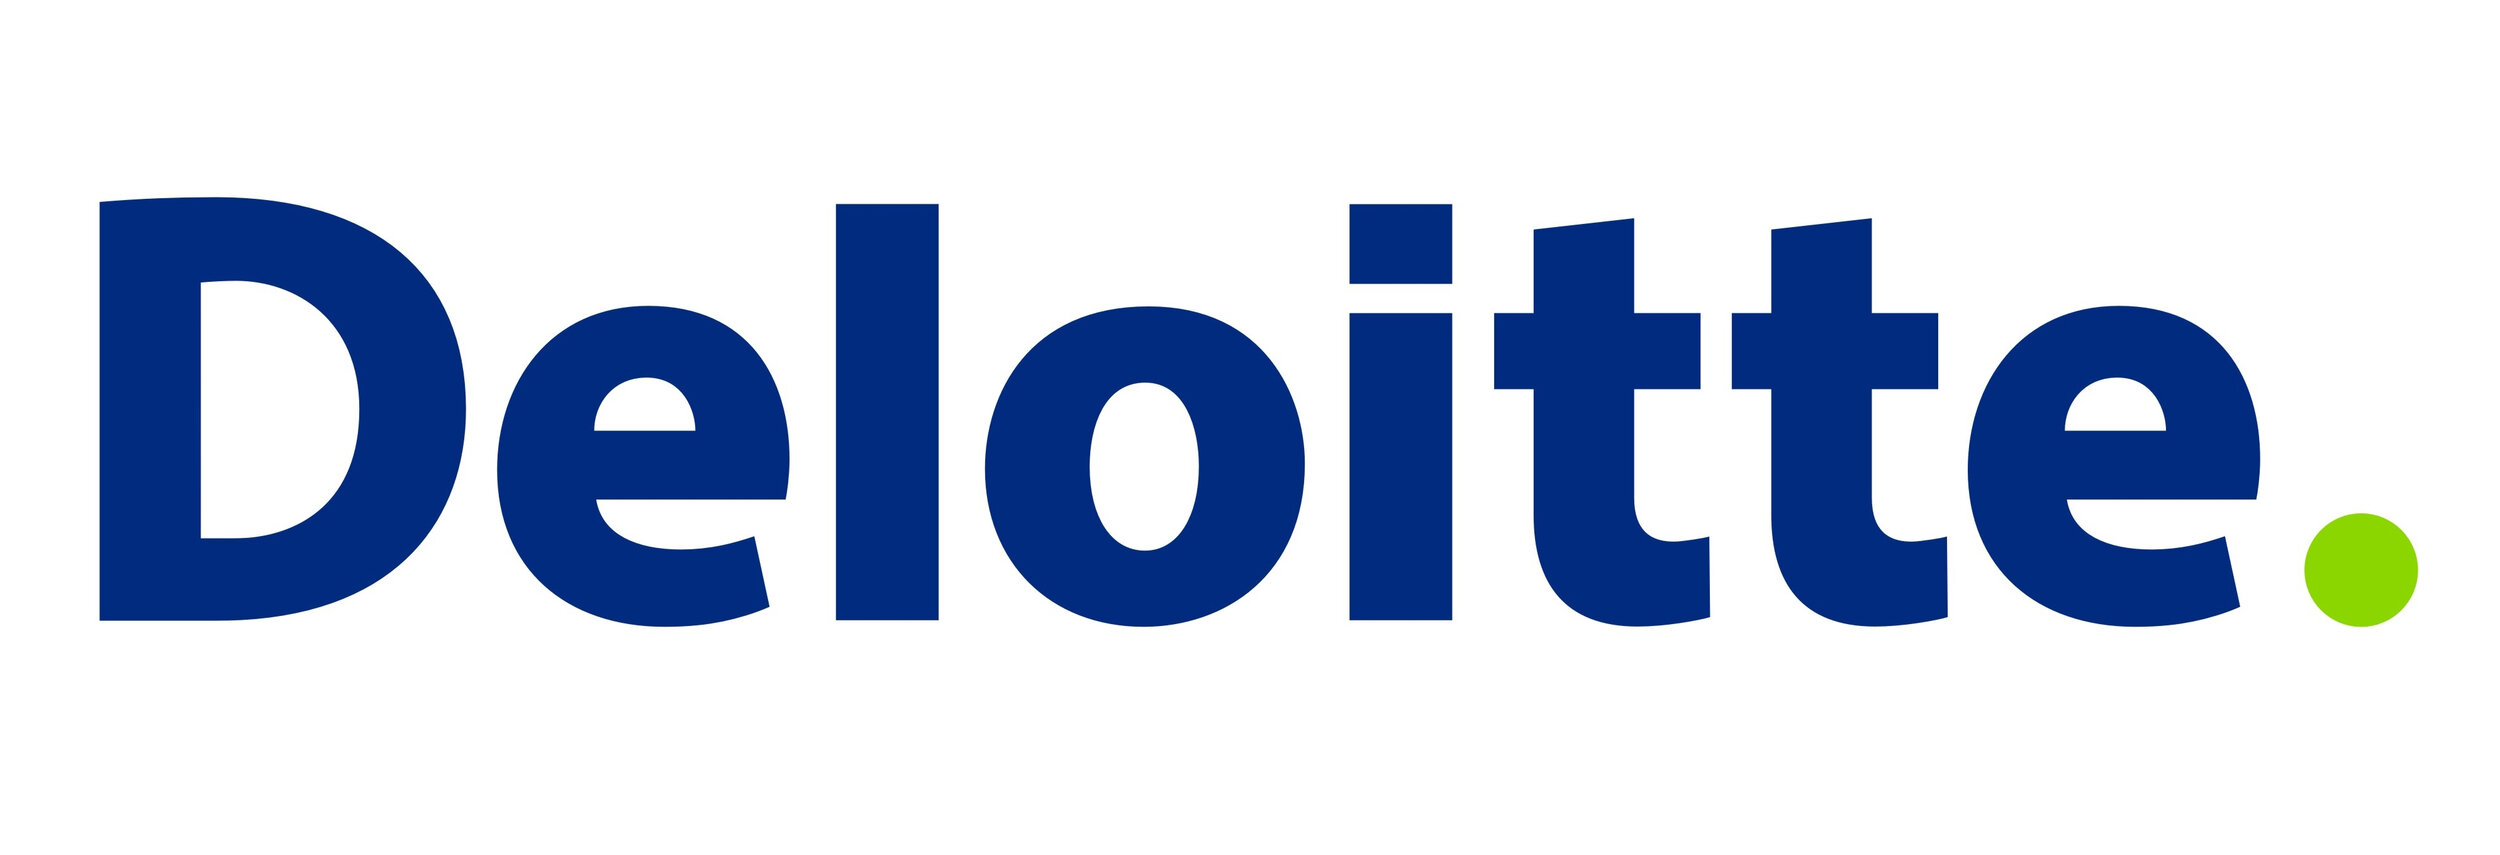 deloitte-logo-1.jpg